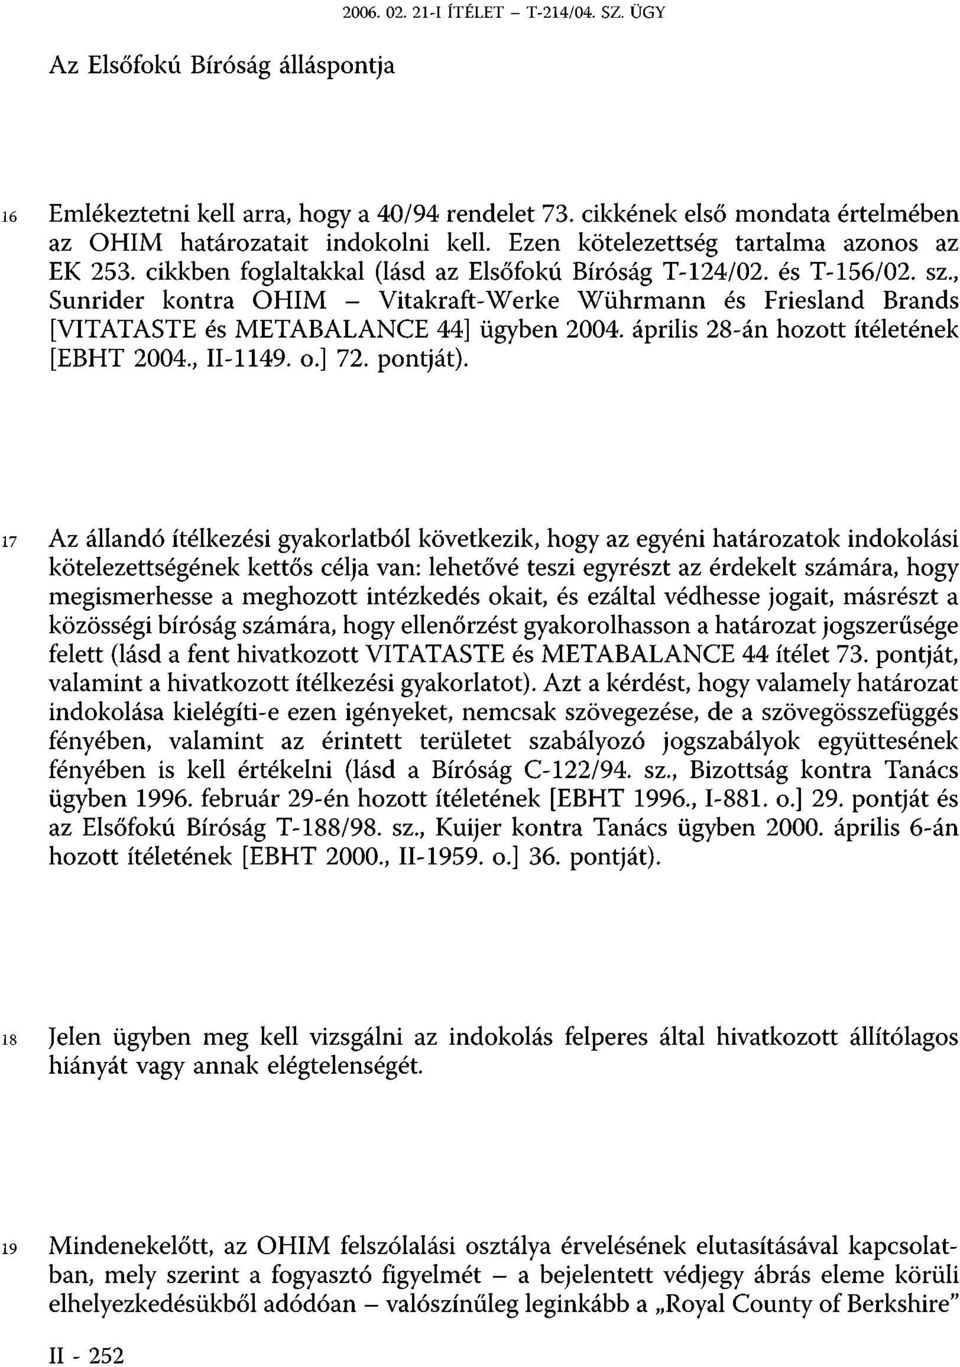 , Sunrider kontra OHIM - Vitakraft-Werke Wührmann és Friesland Brands [VITATASTE és METABALANCE 44] ügyben 2004. április 28-án hozott ítéletének [EBHT 2004., II-1149. o.] 72. pontját).